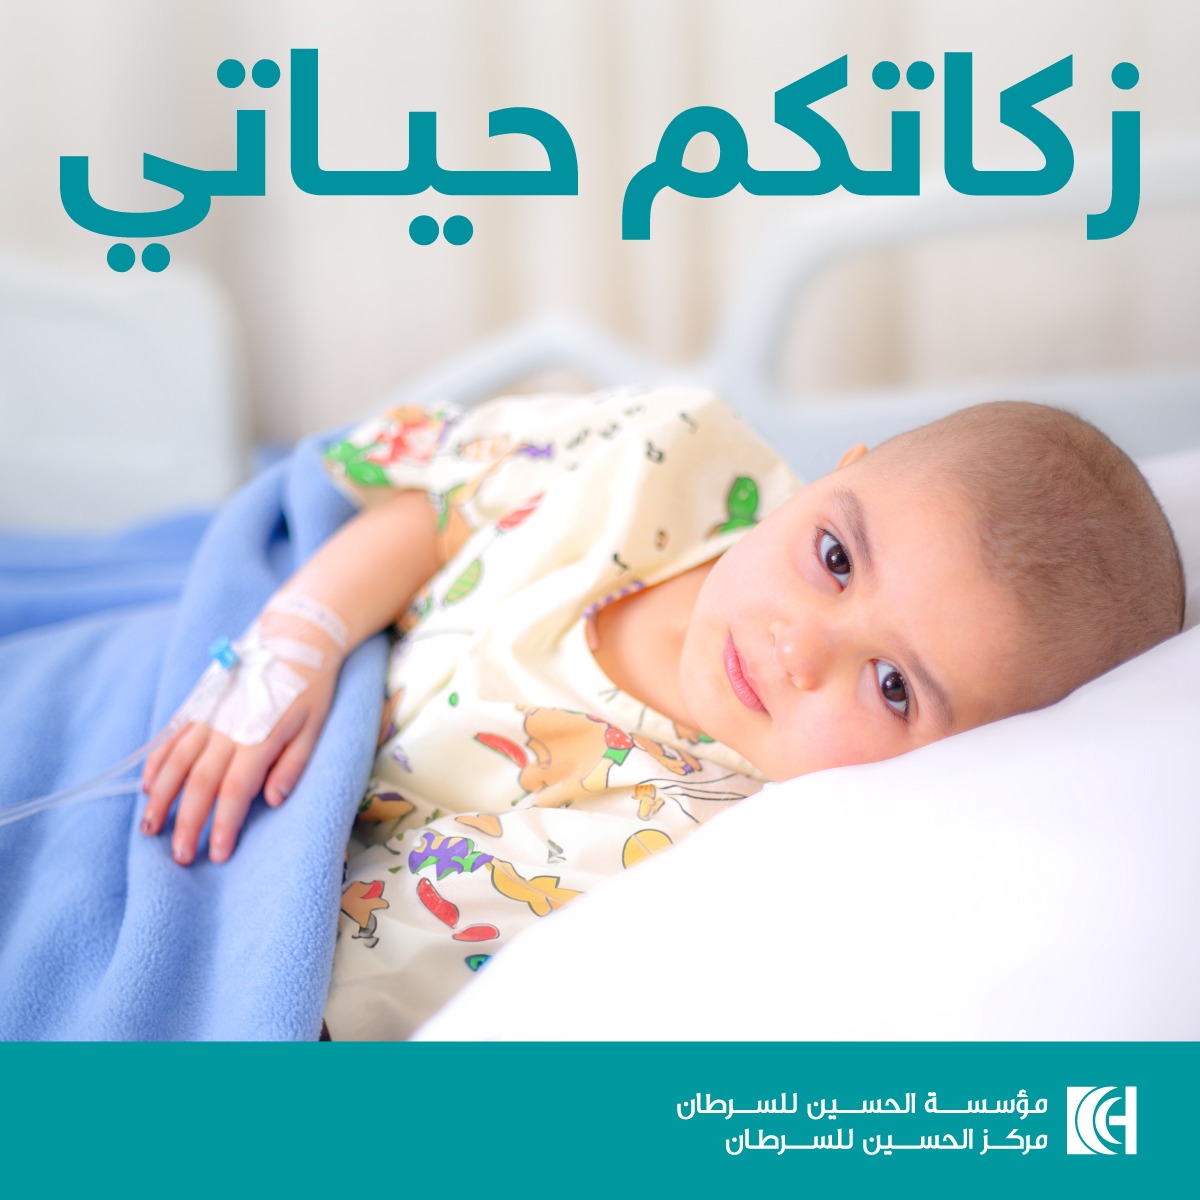 مؤسسة الحسين للسرطان تطلق حملة زكاتكم حياتي